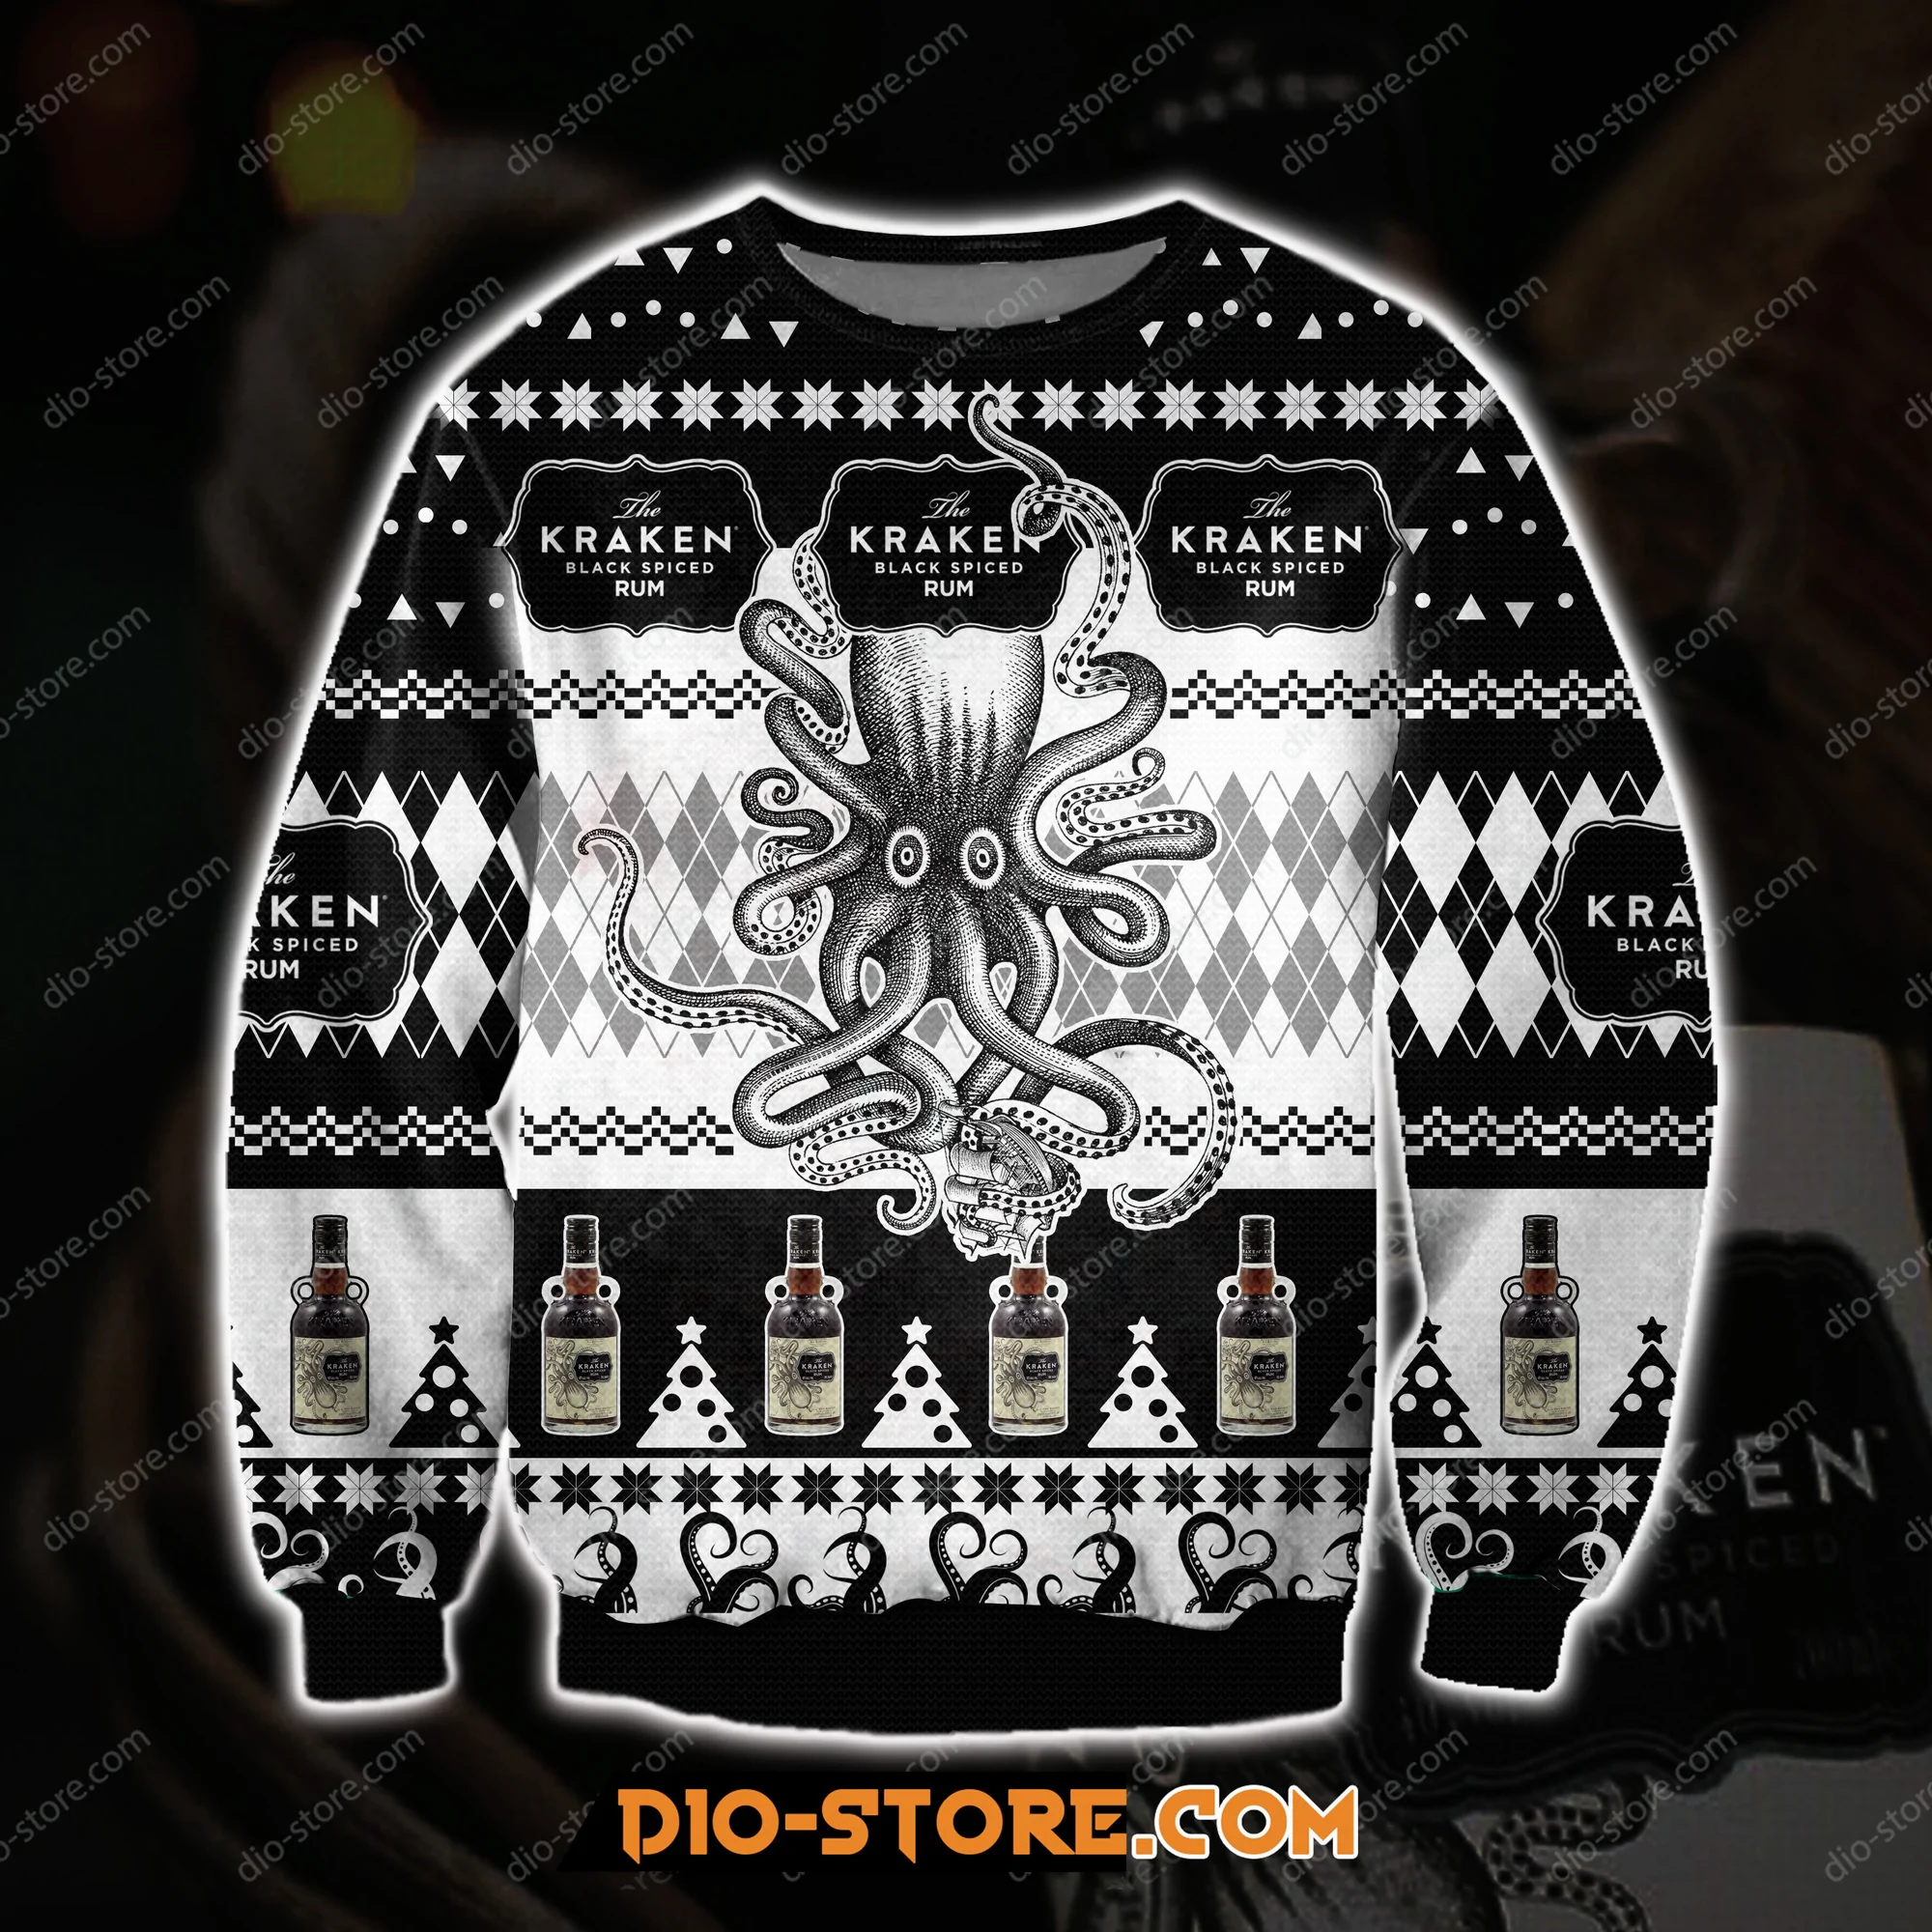 Kraken Black Spiced Rum Ugly Christmas Sweater